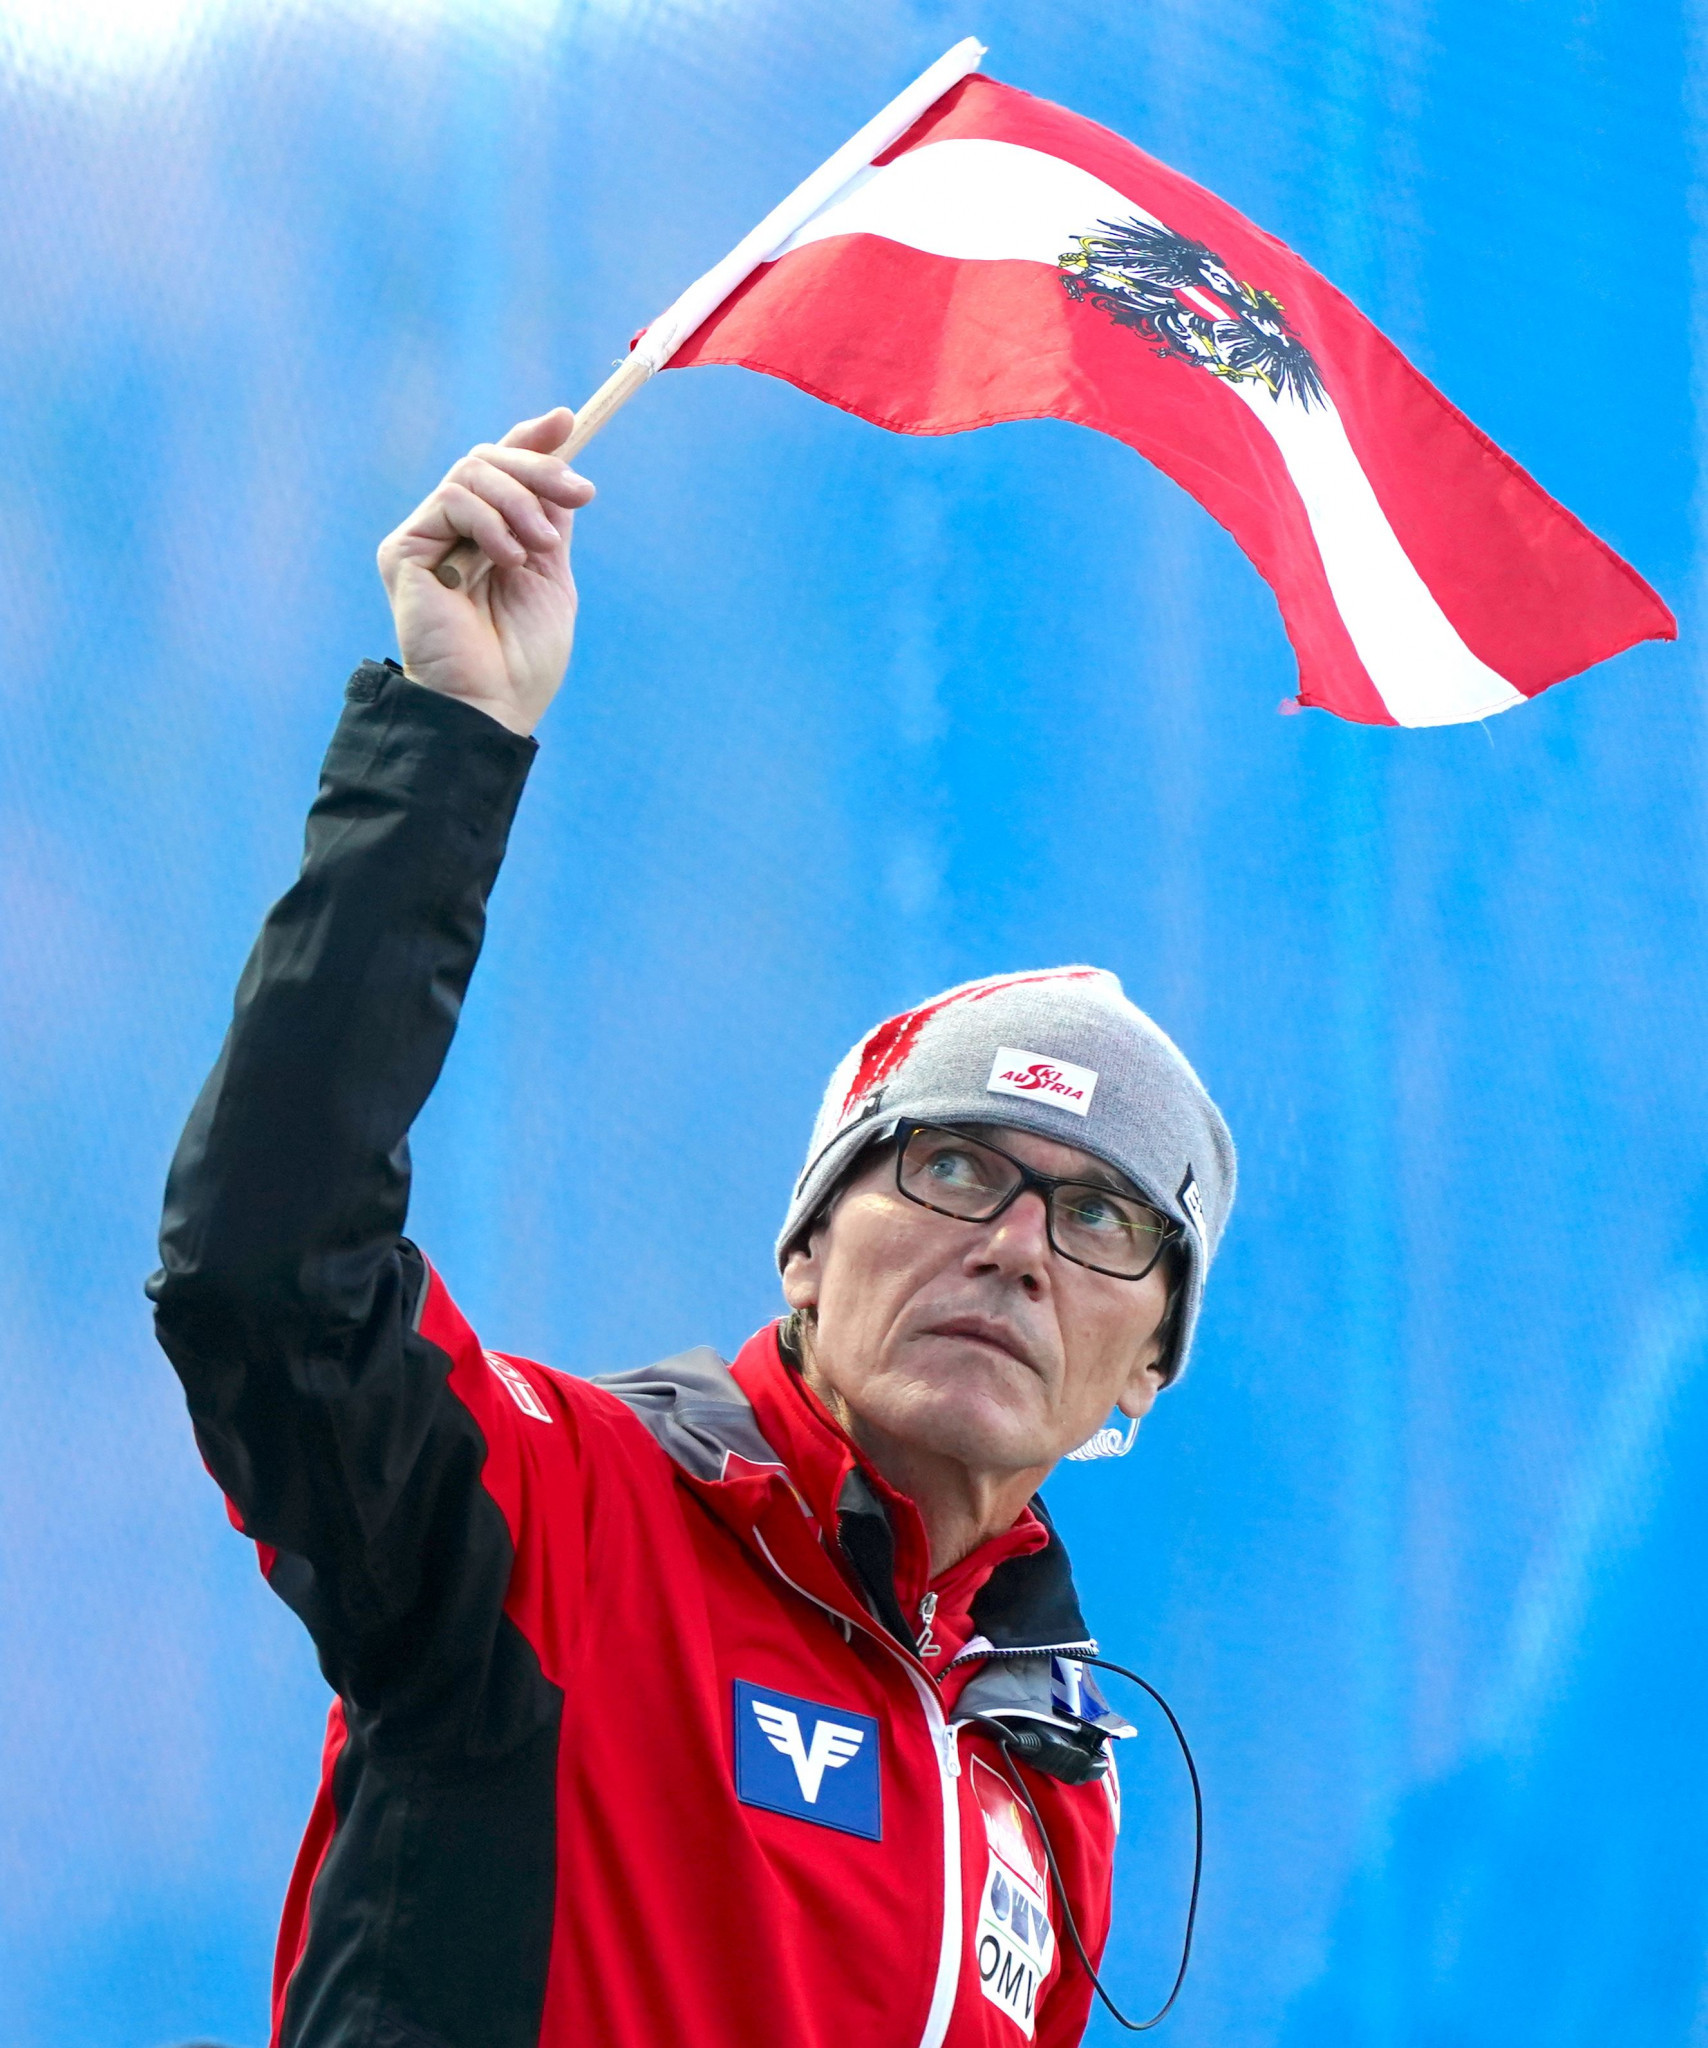 Felder steps down as Austrian ski jumping head coach